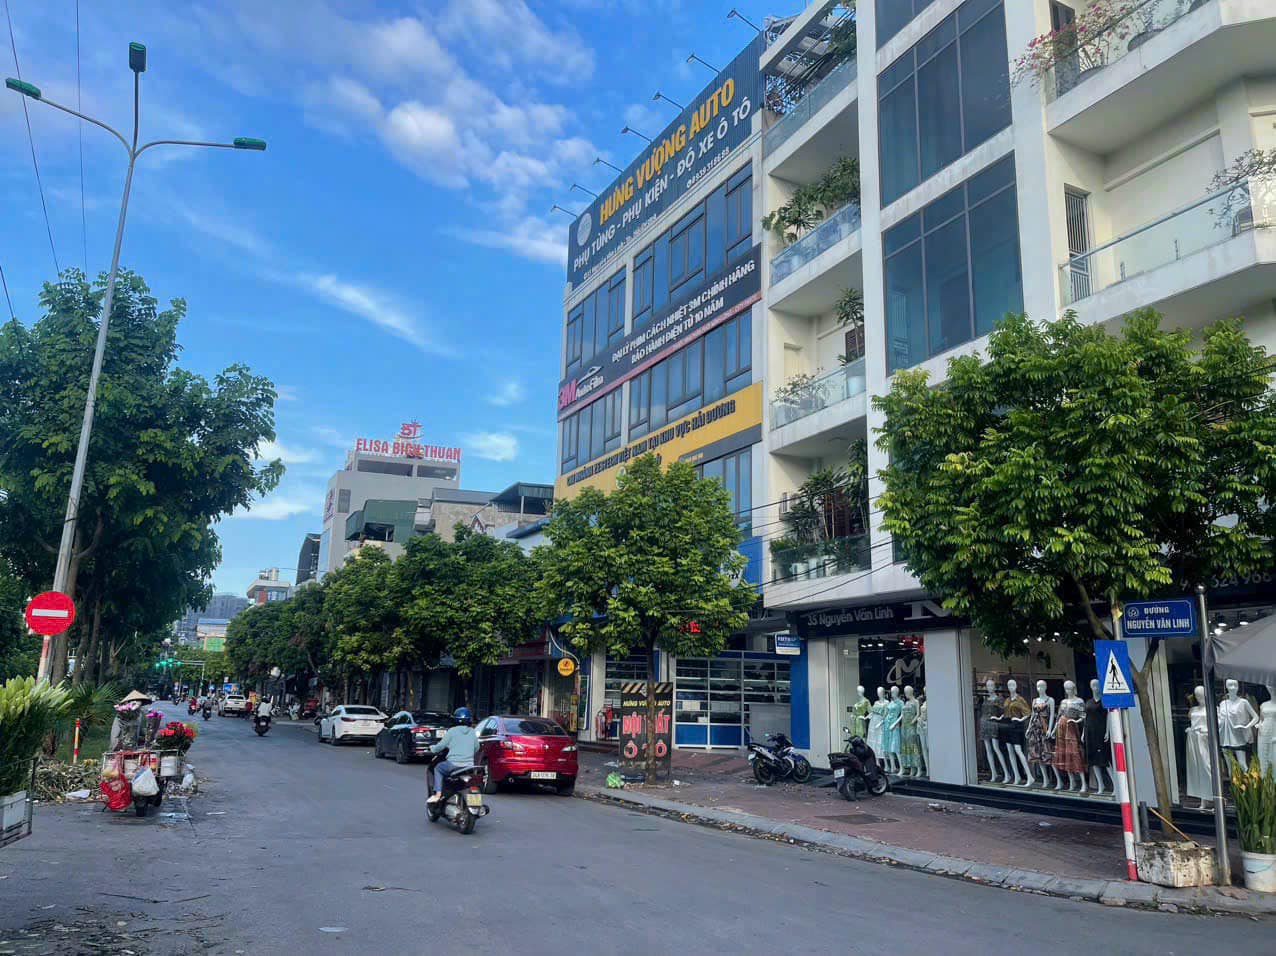 Bán nhà 2 tầng mặt đường đôi Nguyễn Văn Linh, ph Tân Bình, TP HD, 60.1m2, mt 4.57m, KD buôn bán tốt - Ảnh 1